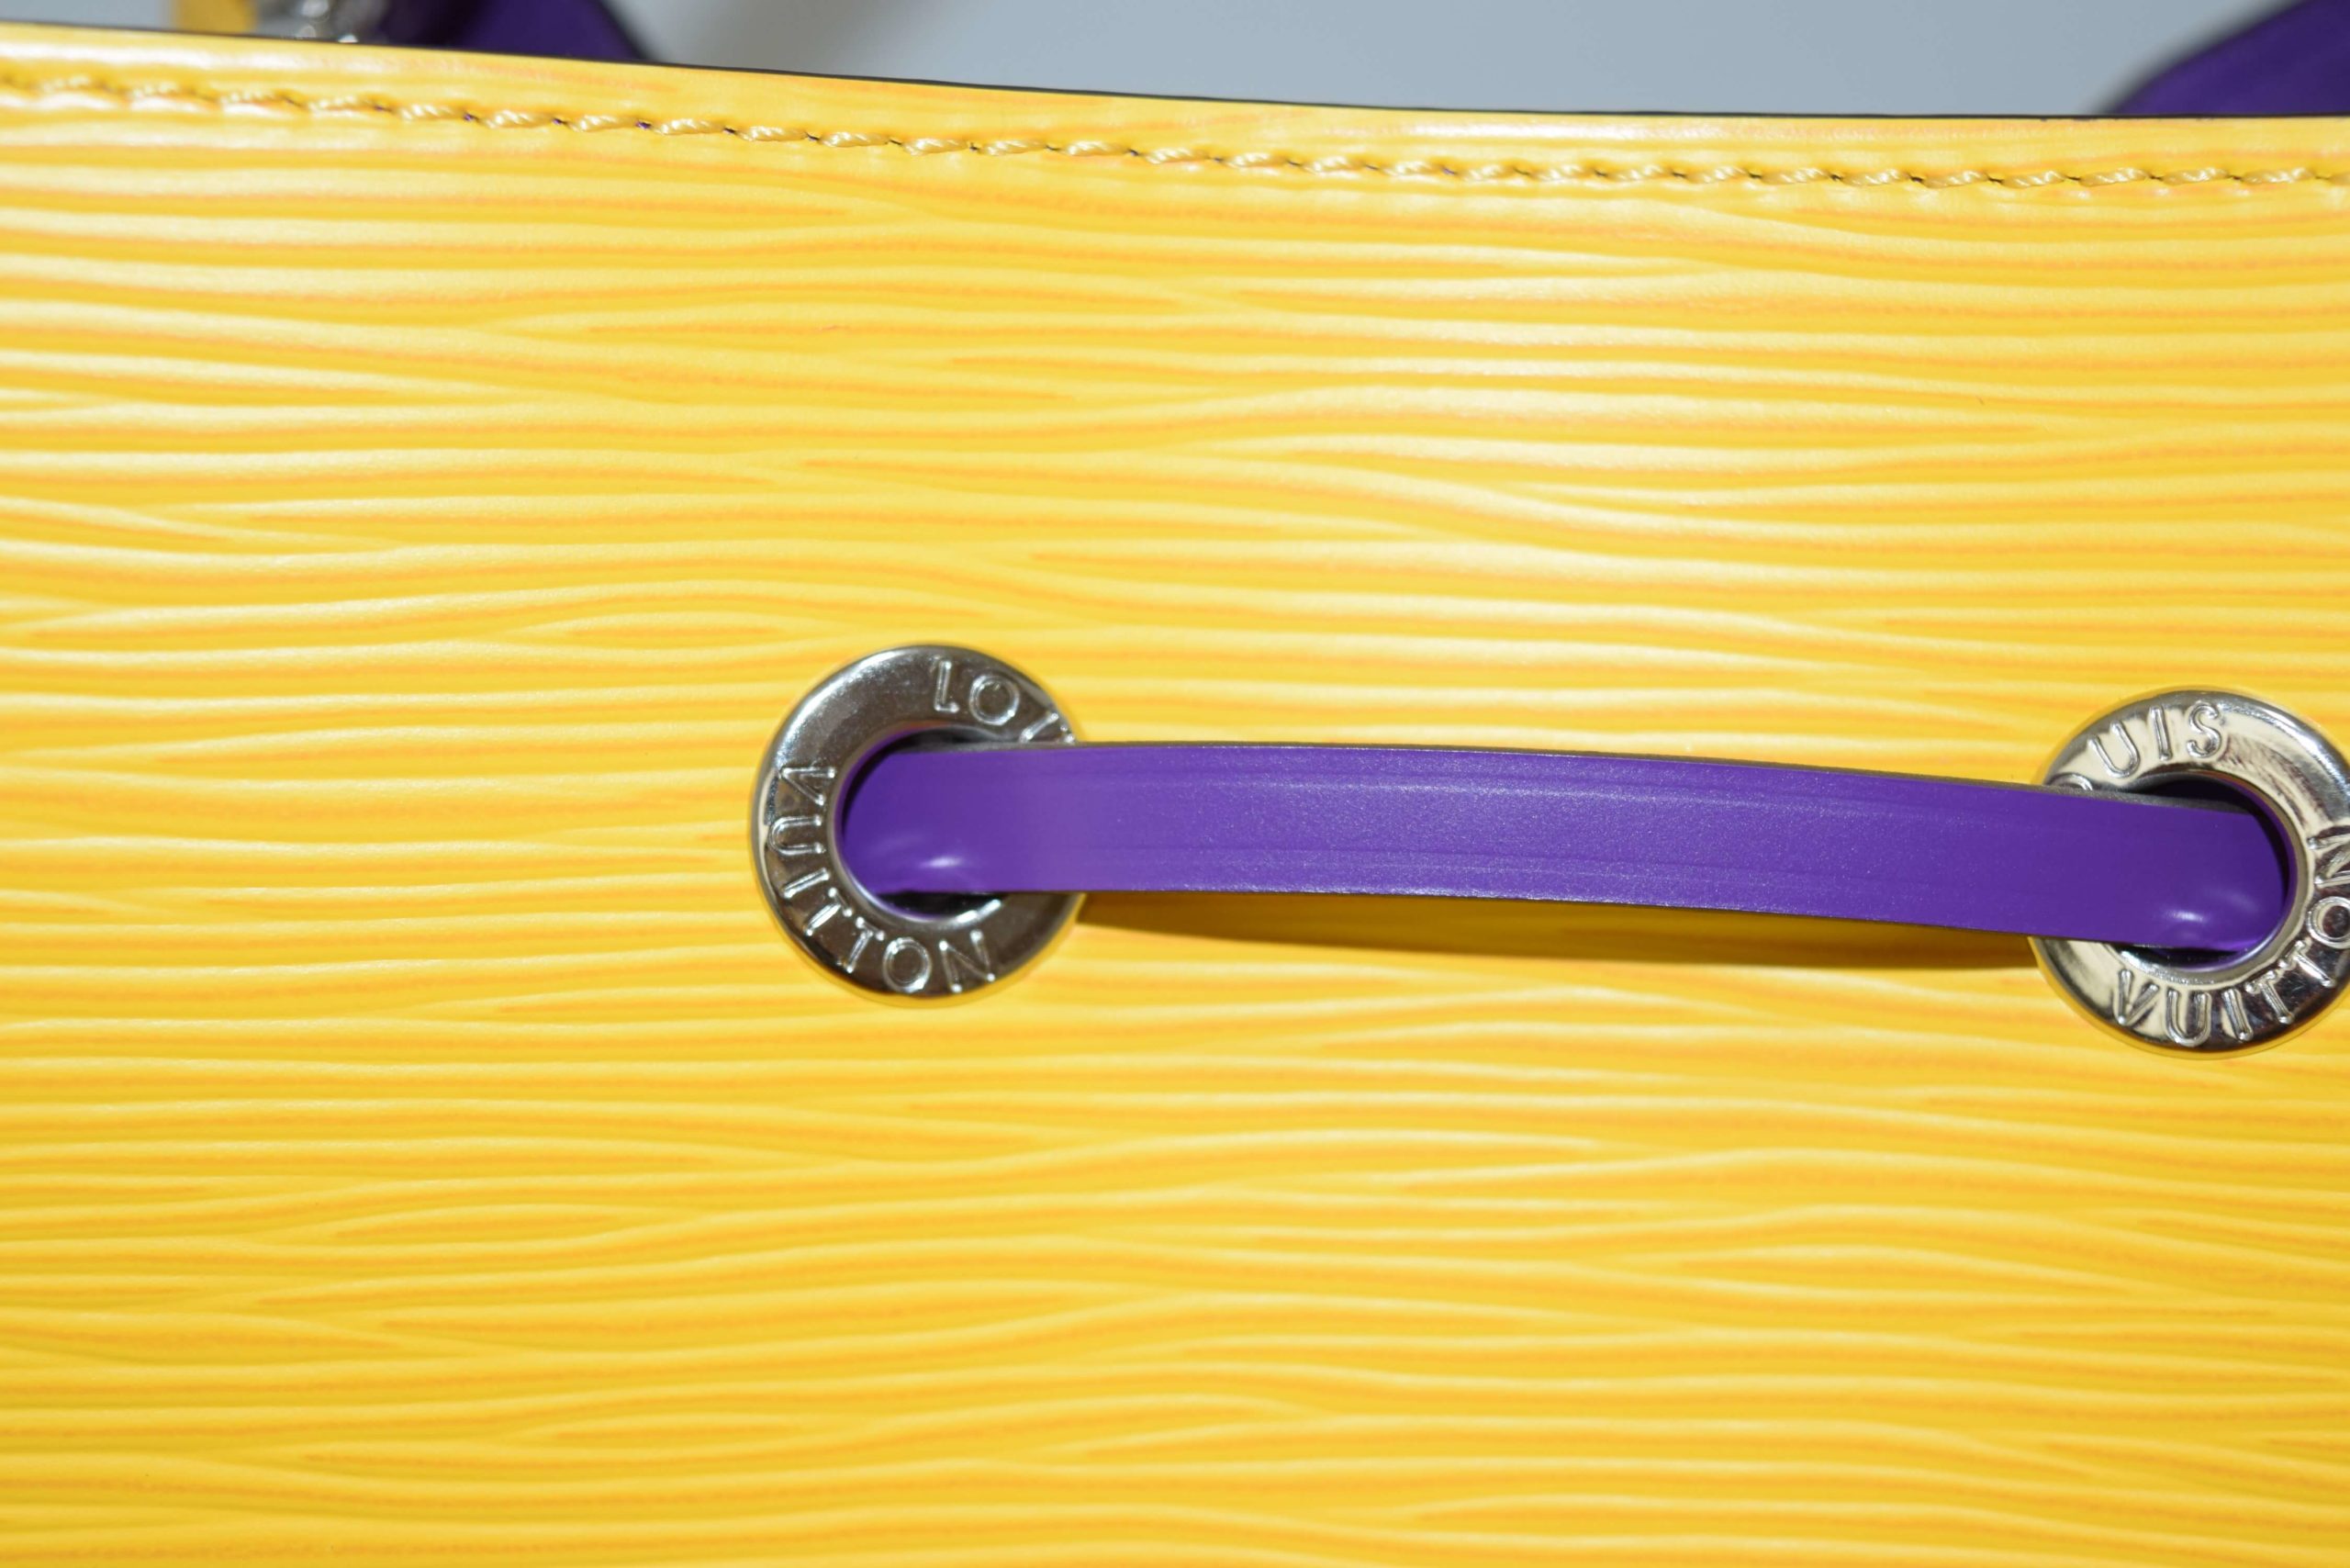 Louis Vuitton Keepall 50 Virgil Abloh Yellow mesh Boston Bag M55380  w/Receipt